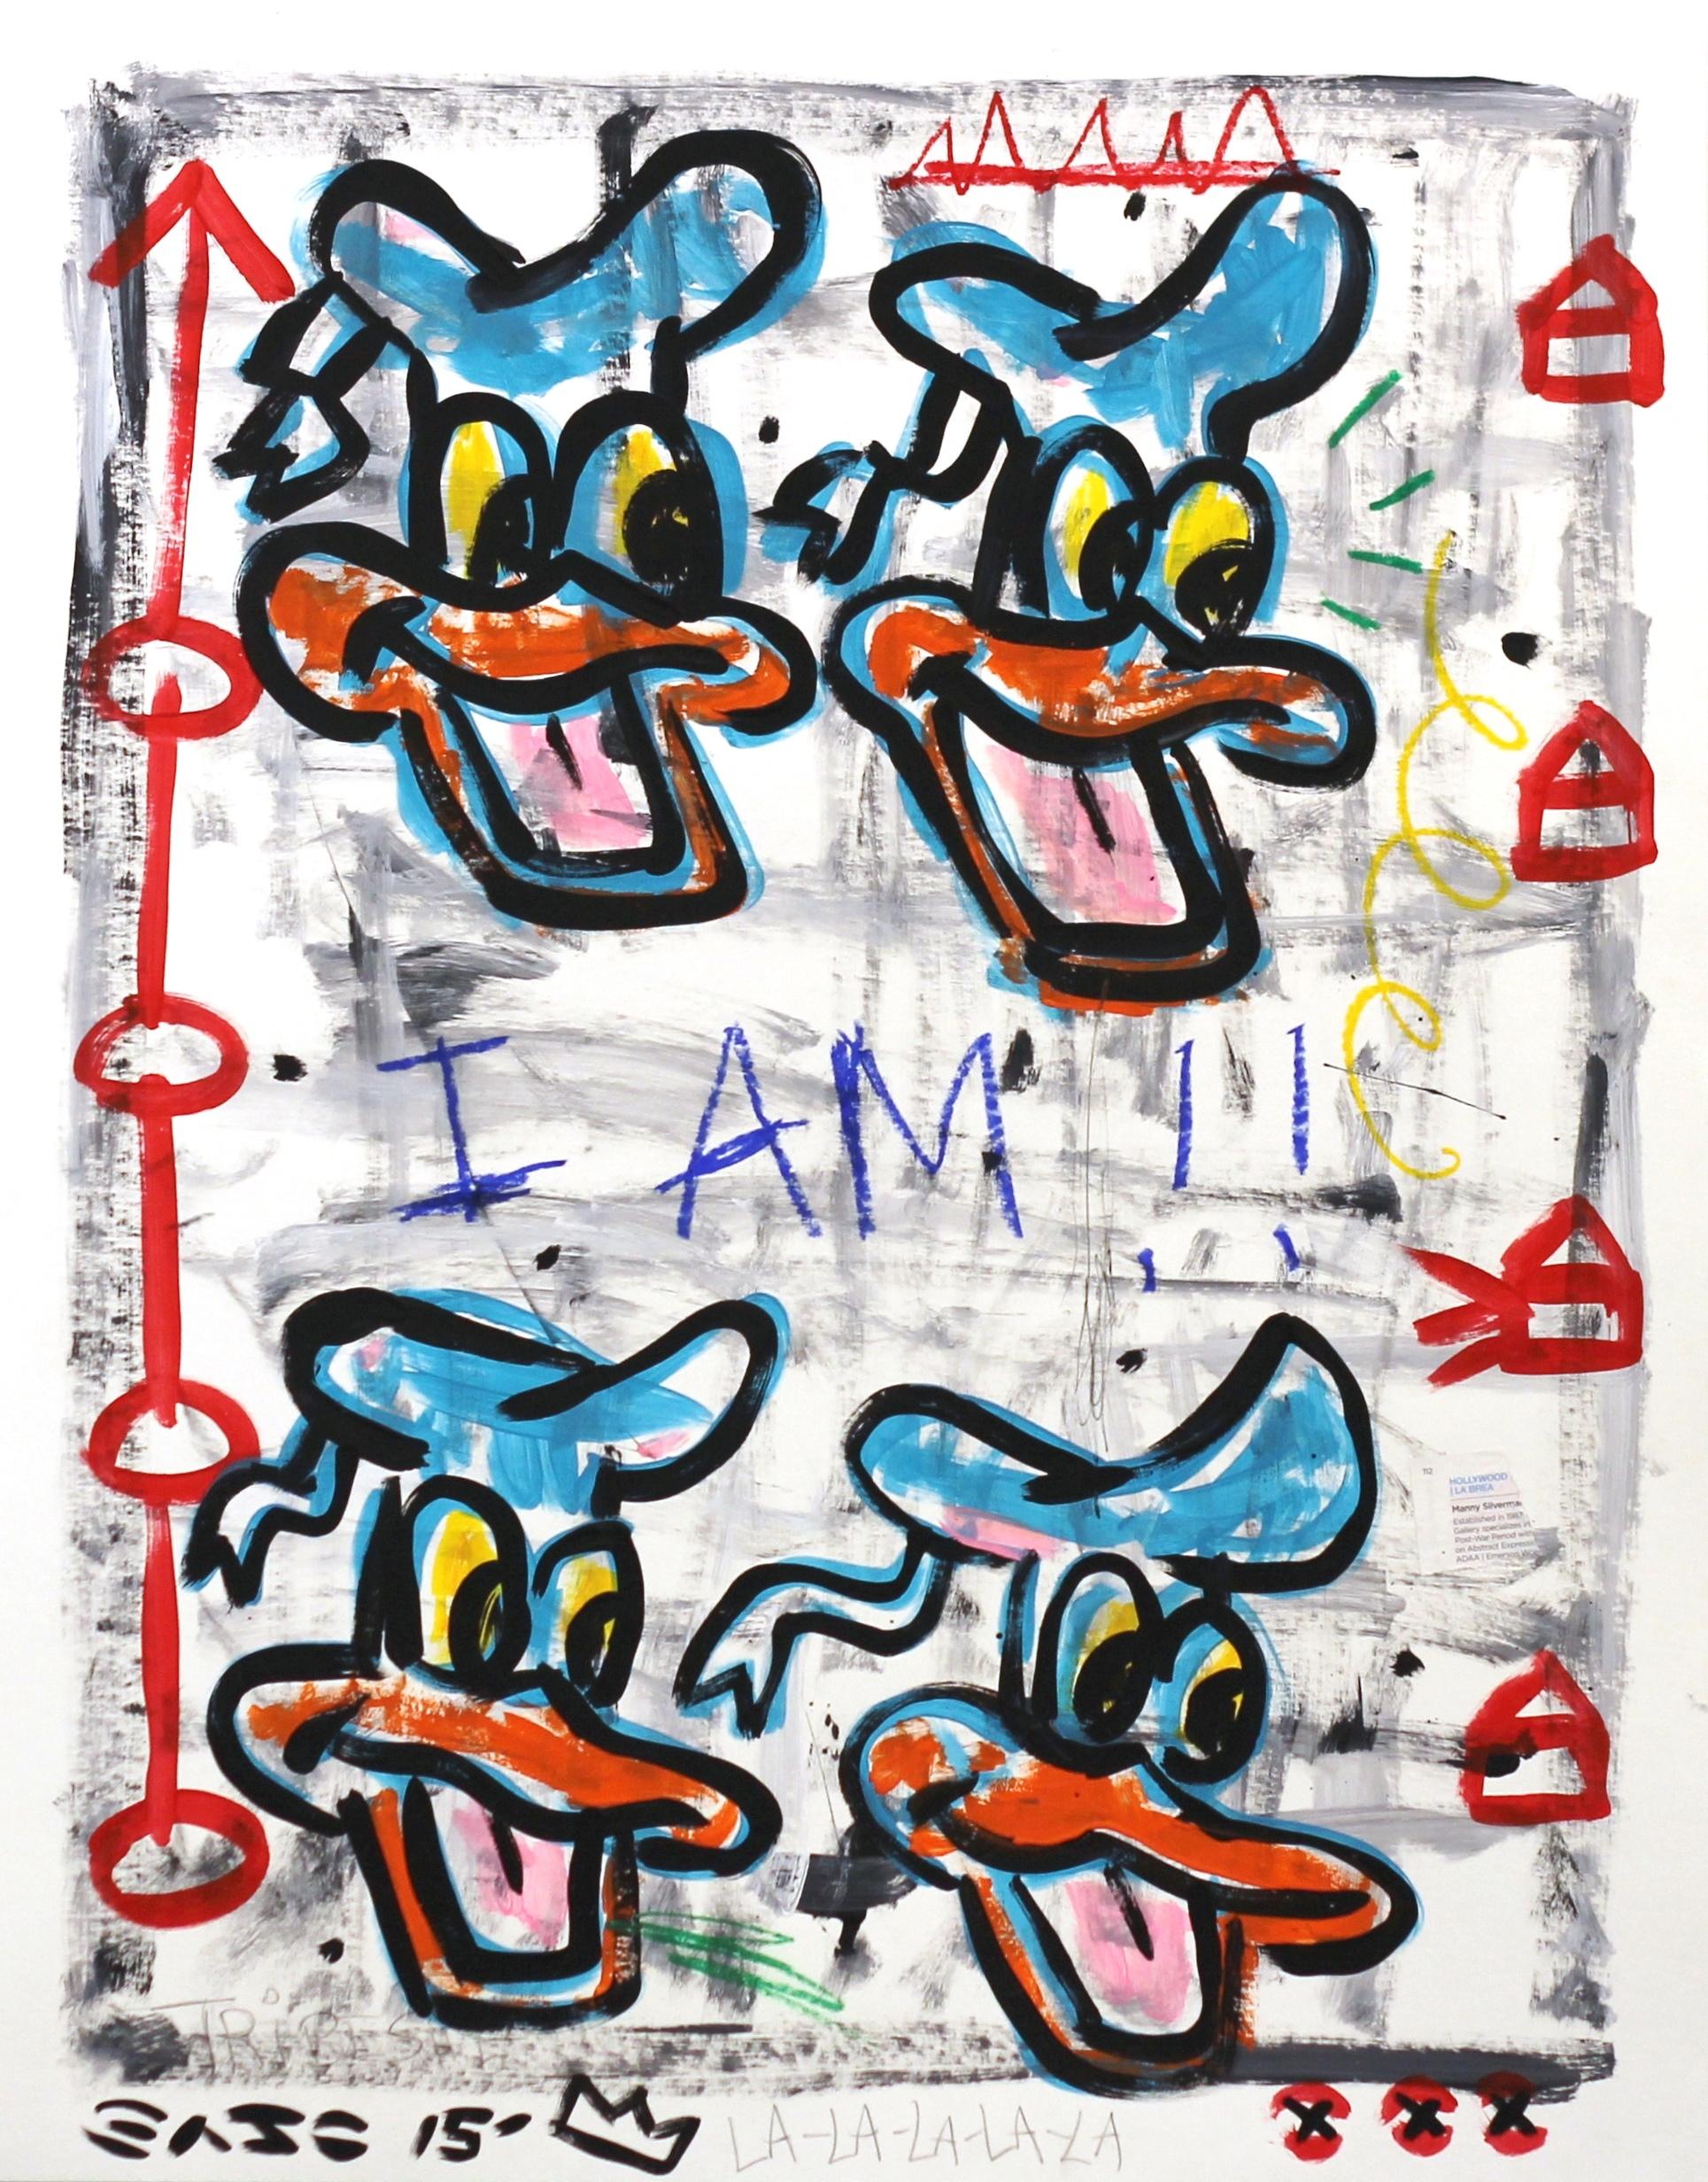 Der aus Los Angeles stammende Straßenkünstler Gary John tauchte erstmals während der Art Basel Miami im Jahr 2013 in der internationalen Kunstszene auf. Johns spielerisch kühne Arbeiten erregten schnell Aufmerksamkeit und er wurde auf der NY